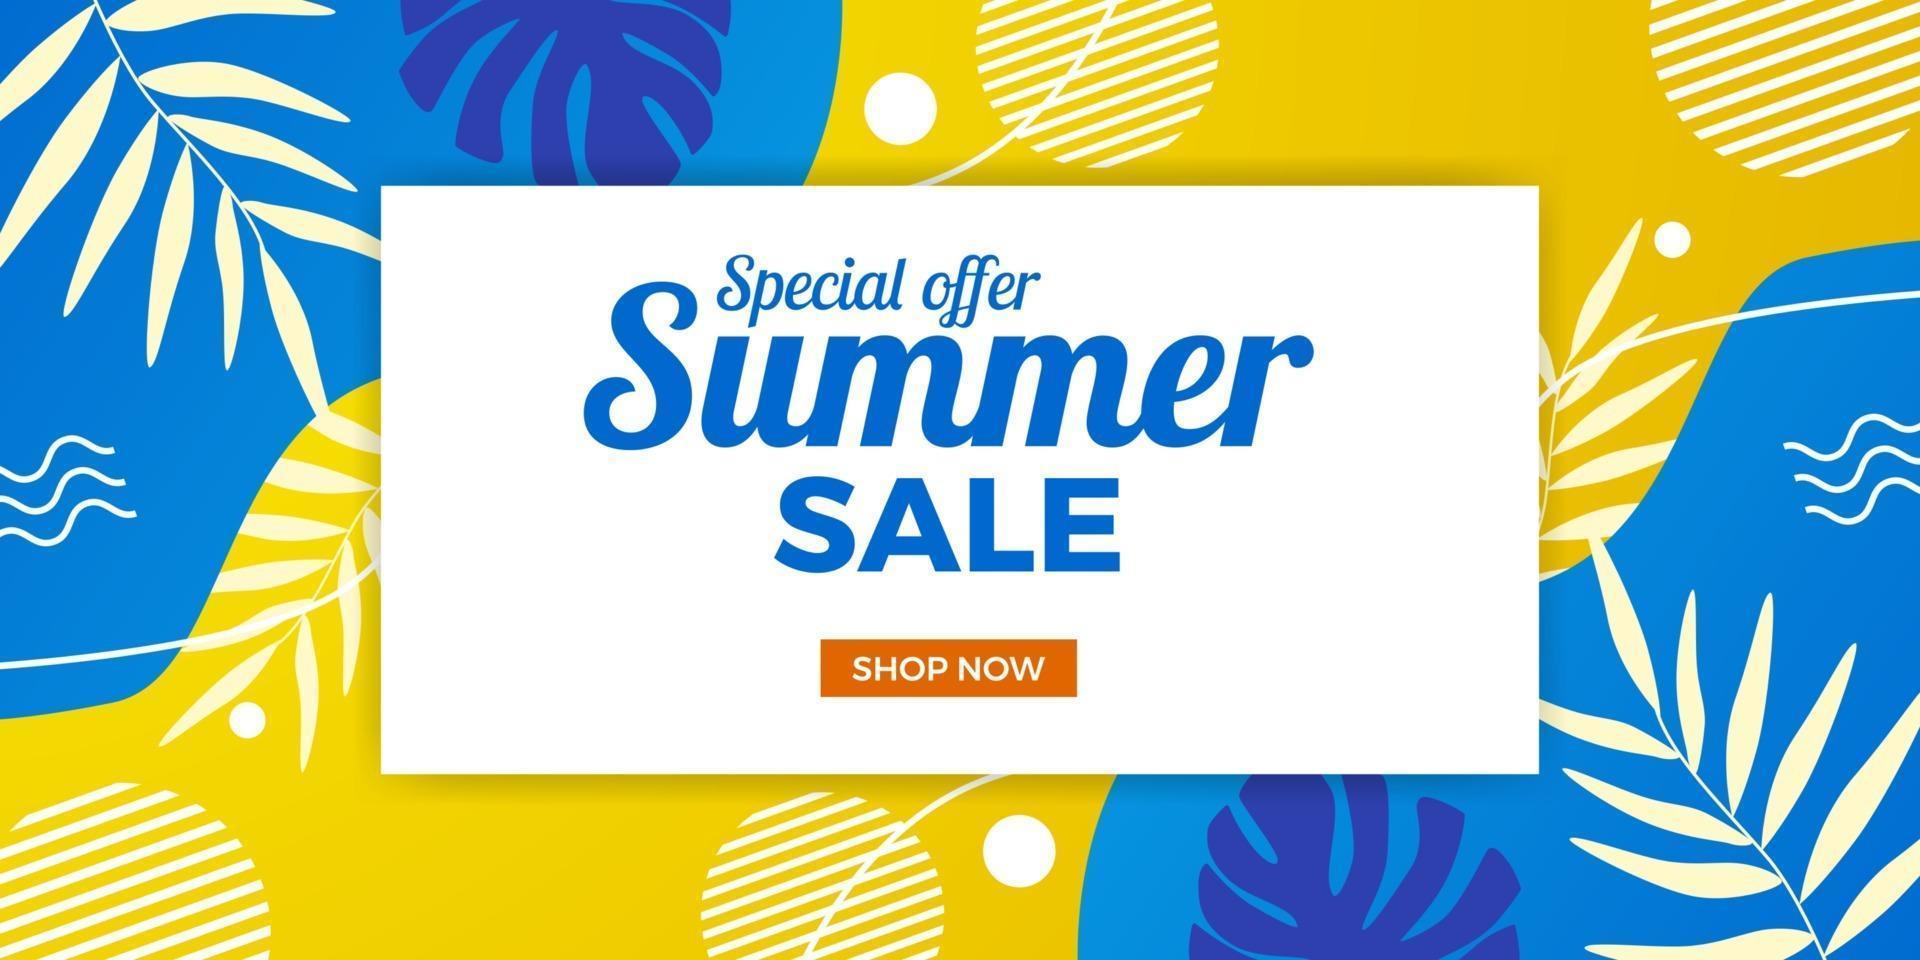 Oferta de venta de verano de moda fresca promoción de banner con estilo abstracto de memphis con fondo amarillo y azul vector